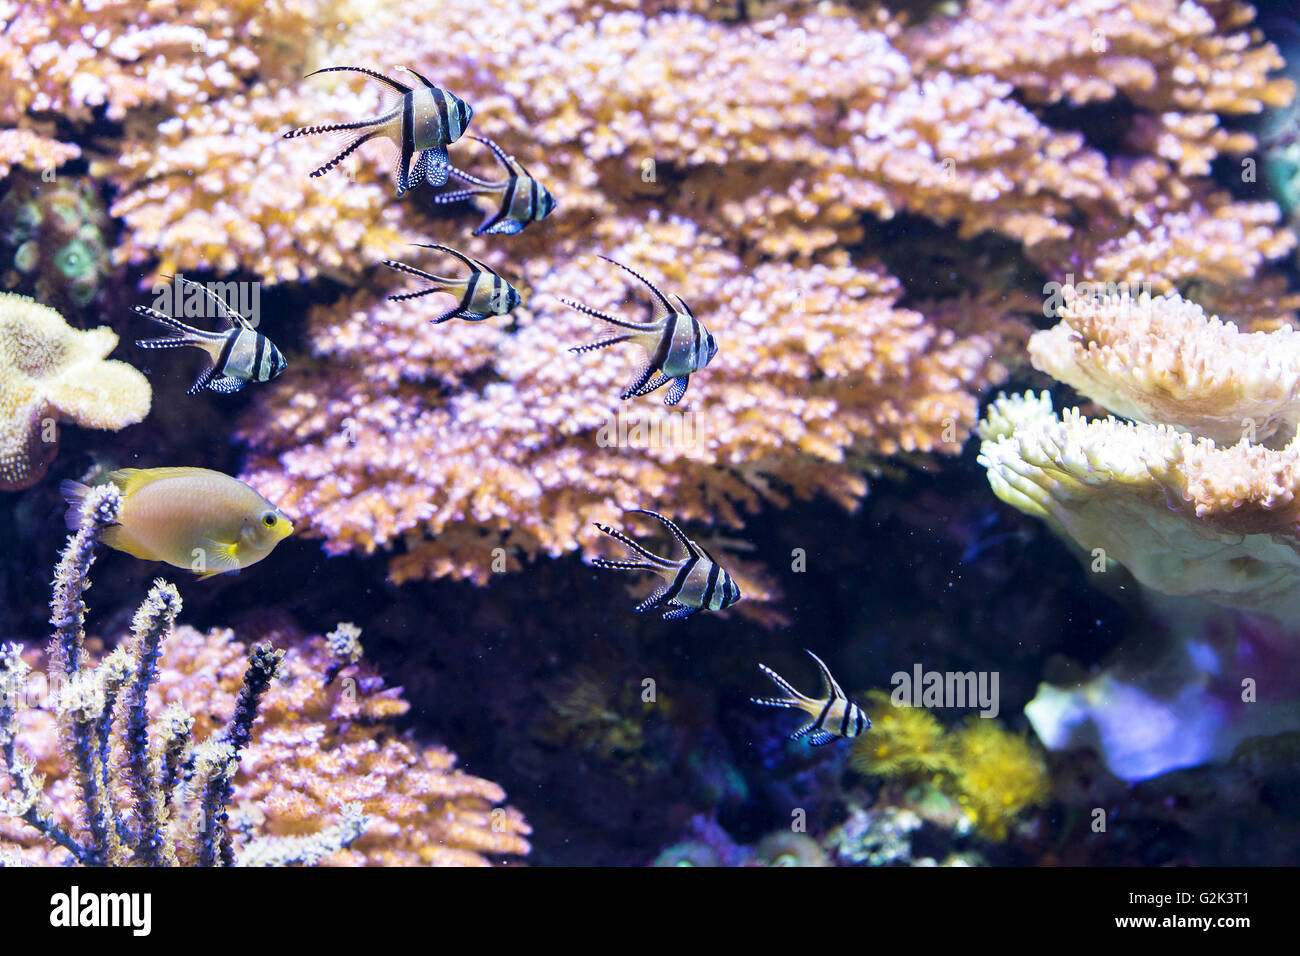 Little fish swimming along beautiful corals Stock Photo